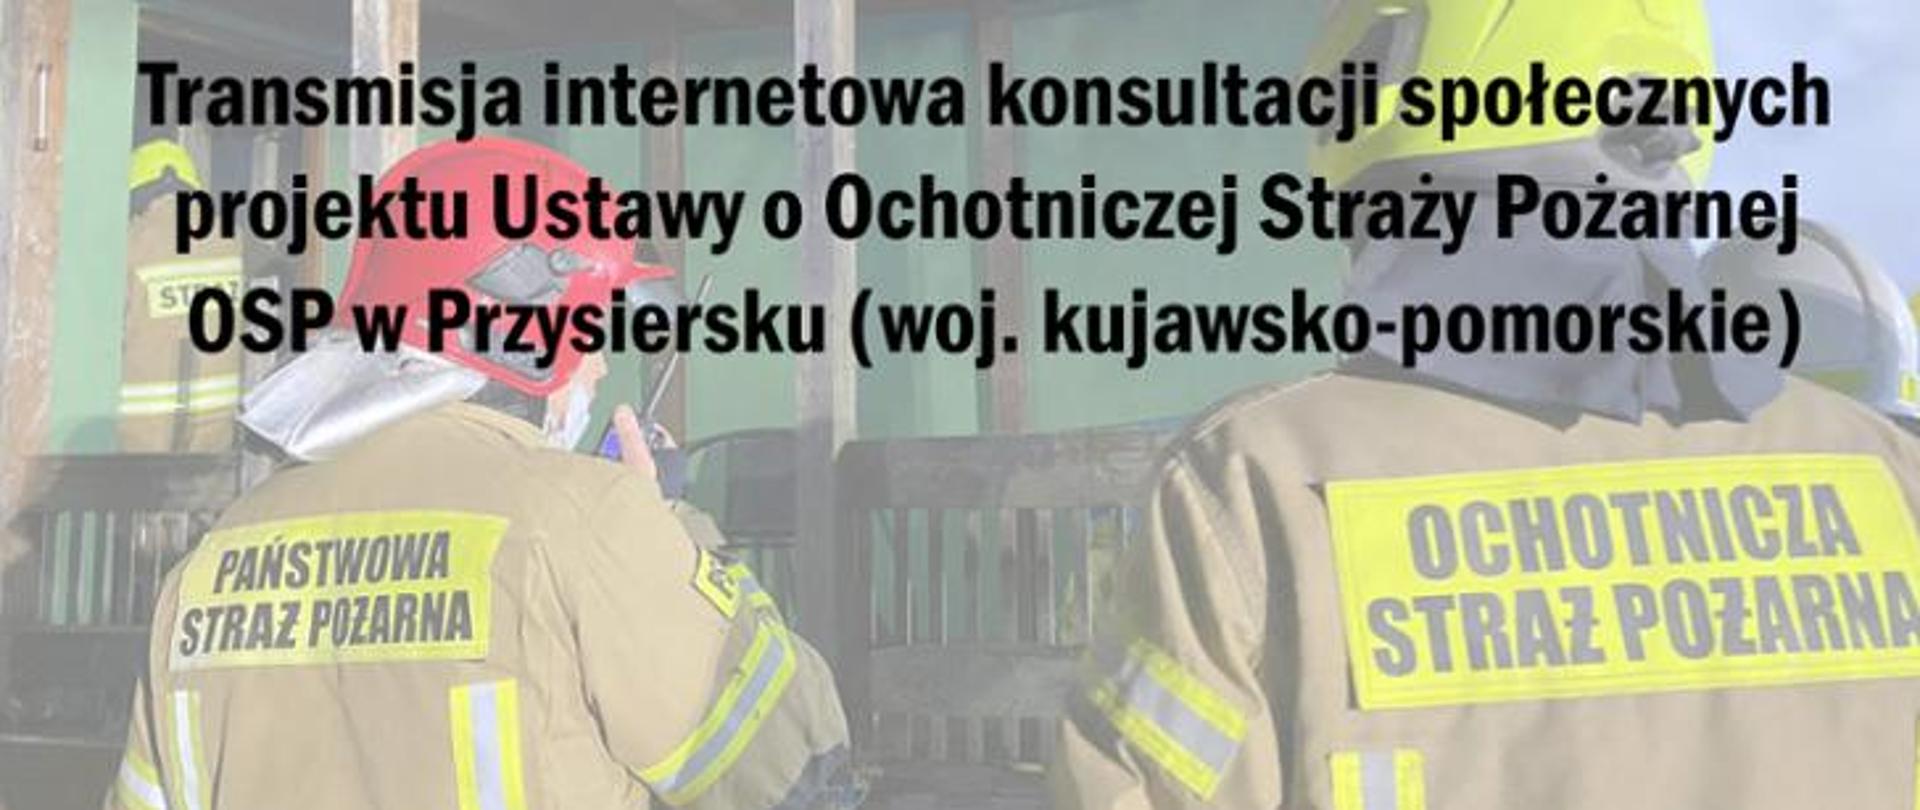 Umundurowanie strażacy PSP i OSP stojący tyłem. N zdjęciu napis: "Transmisja internetowa konsultacji społecznych projektu Ustawy o ochotniczej straży pożarnej OSP w Przysiersku (woj. kujawsko-pomorskie).